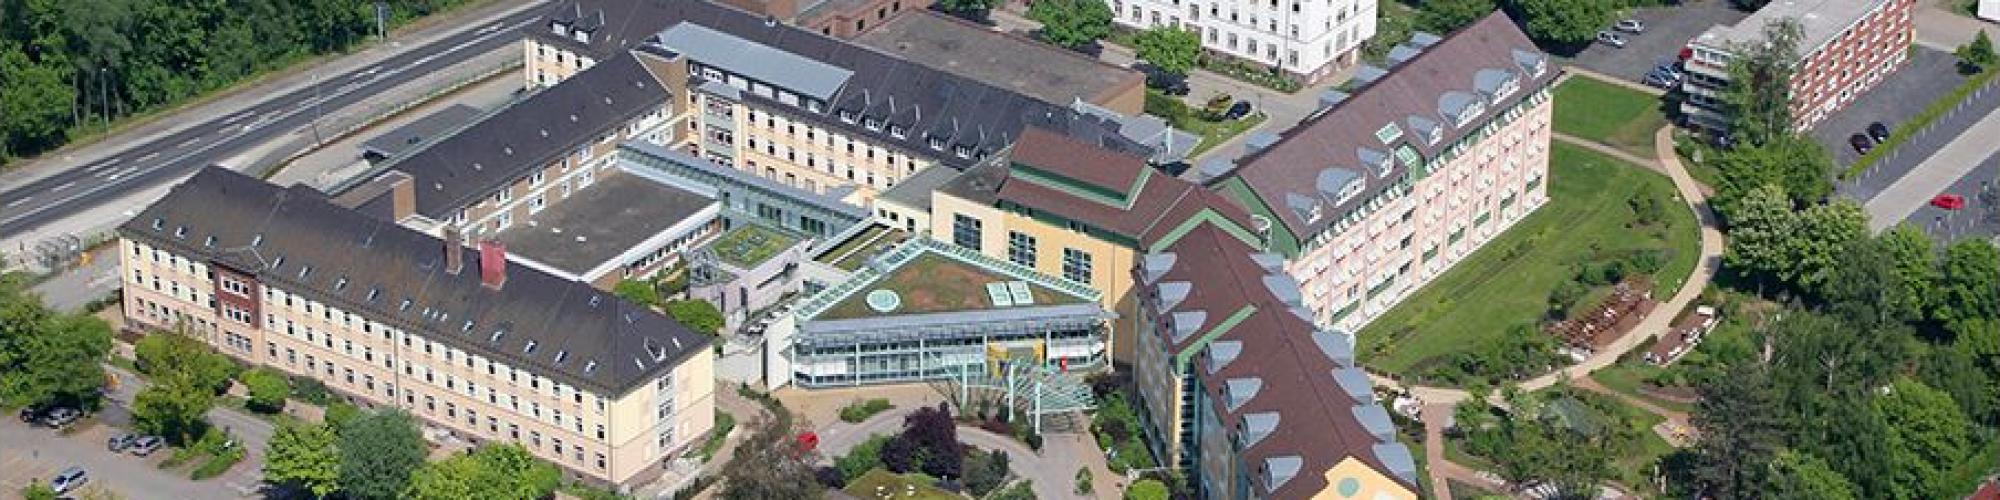 Evangelisches Krankenhaus Göttingen-Weende